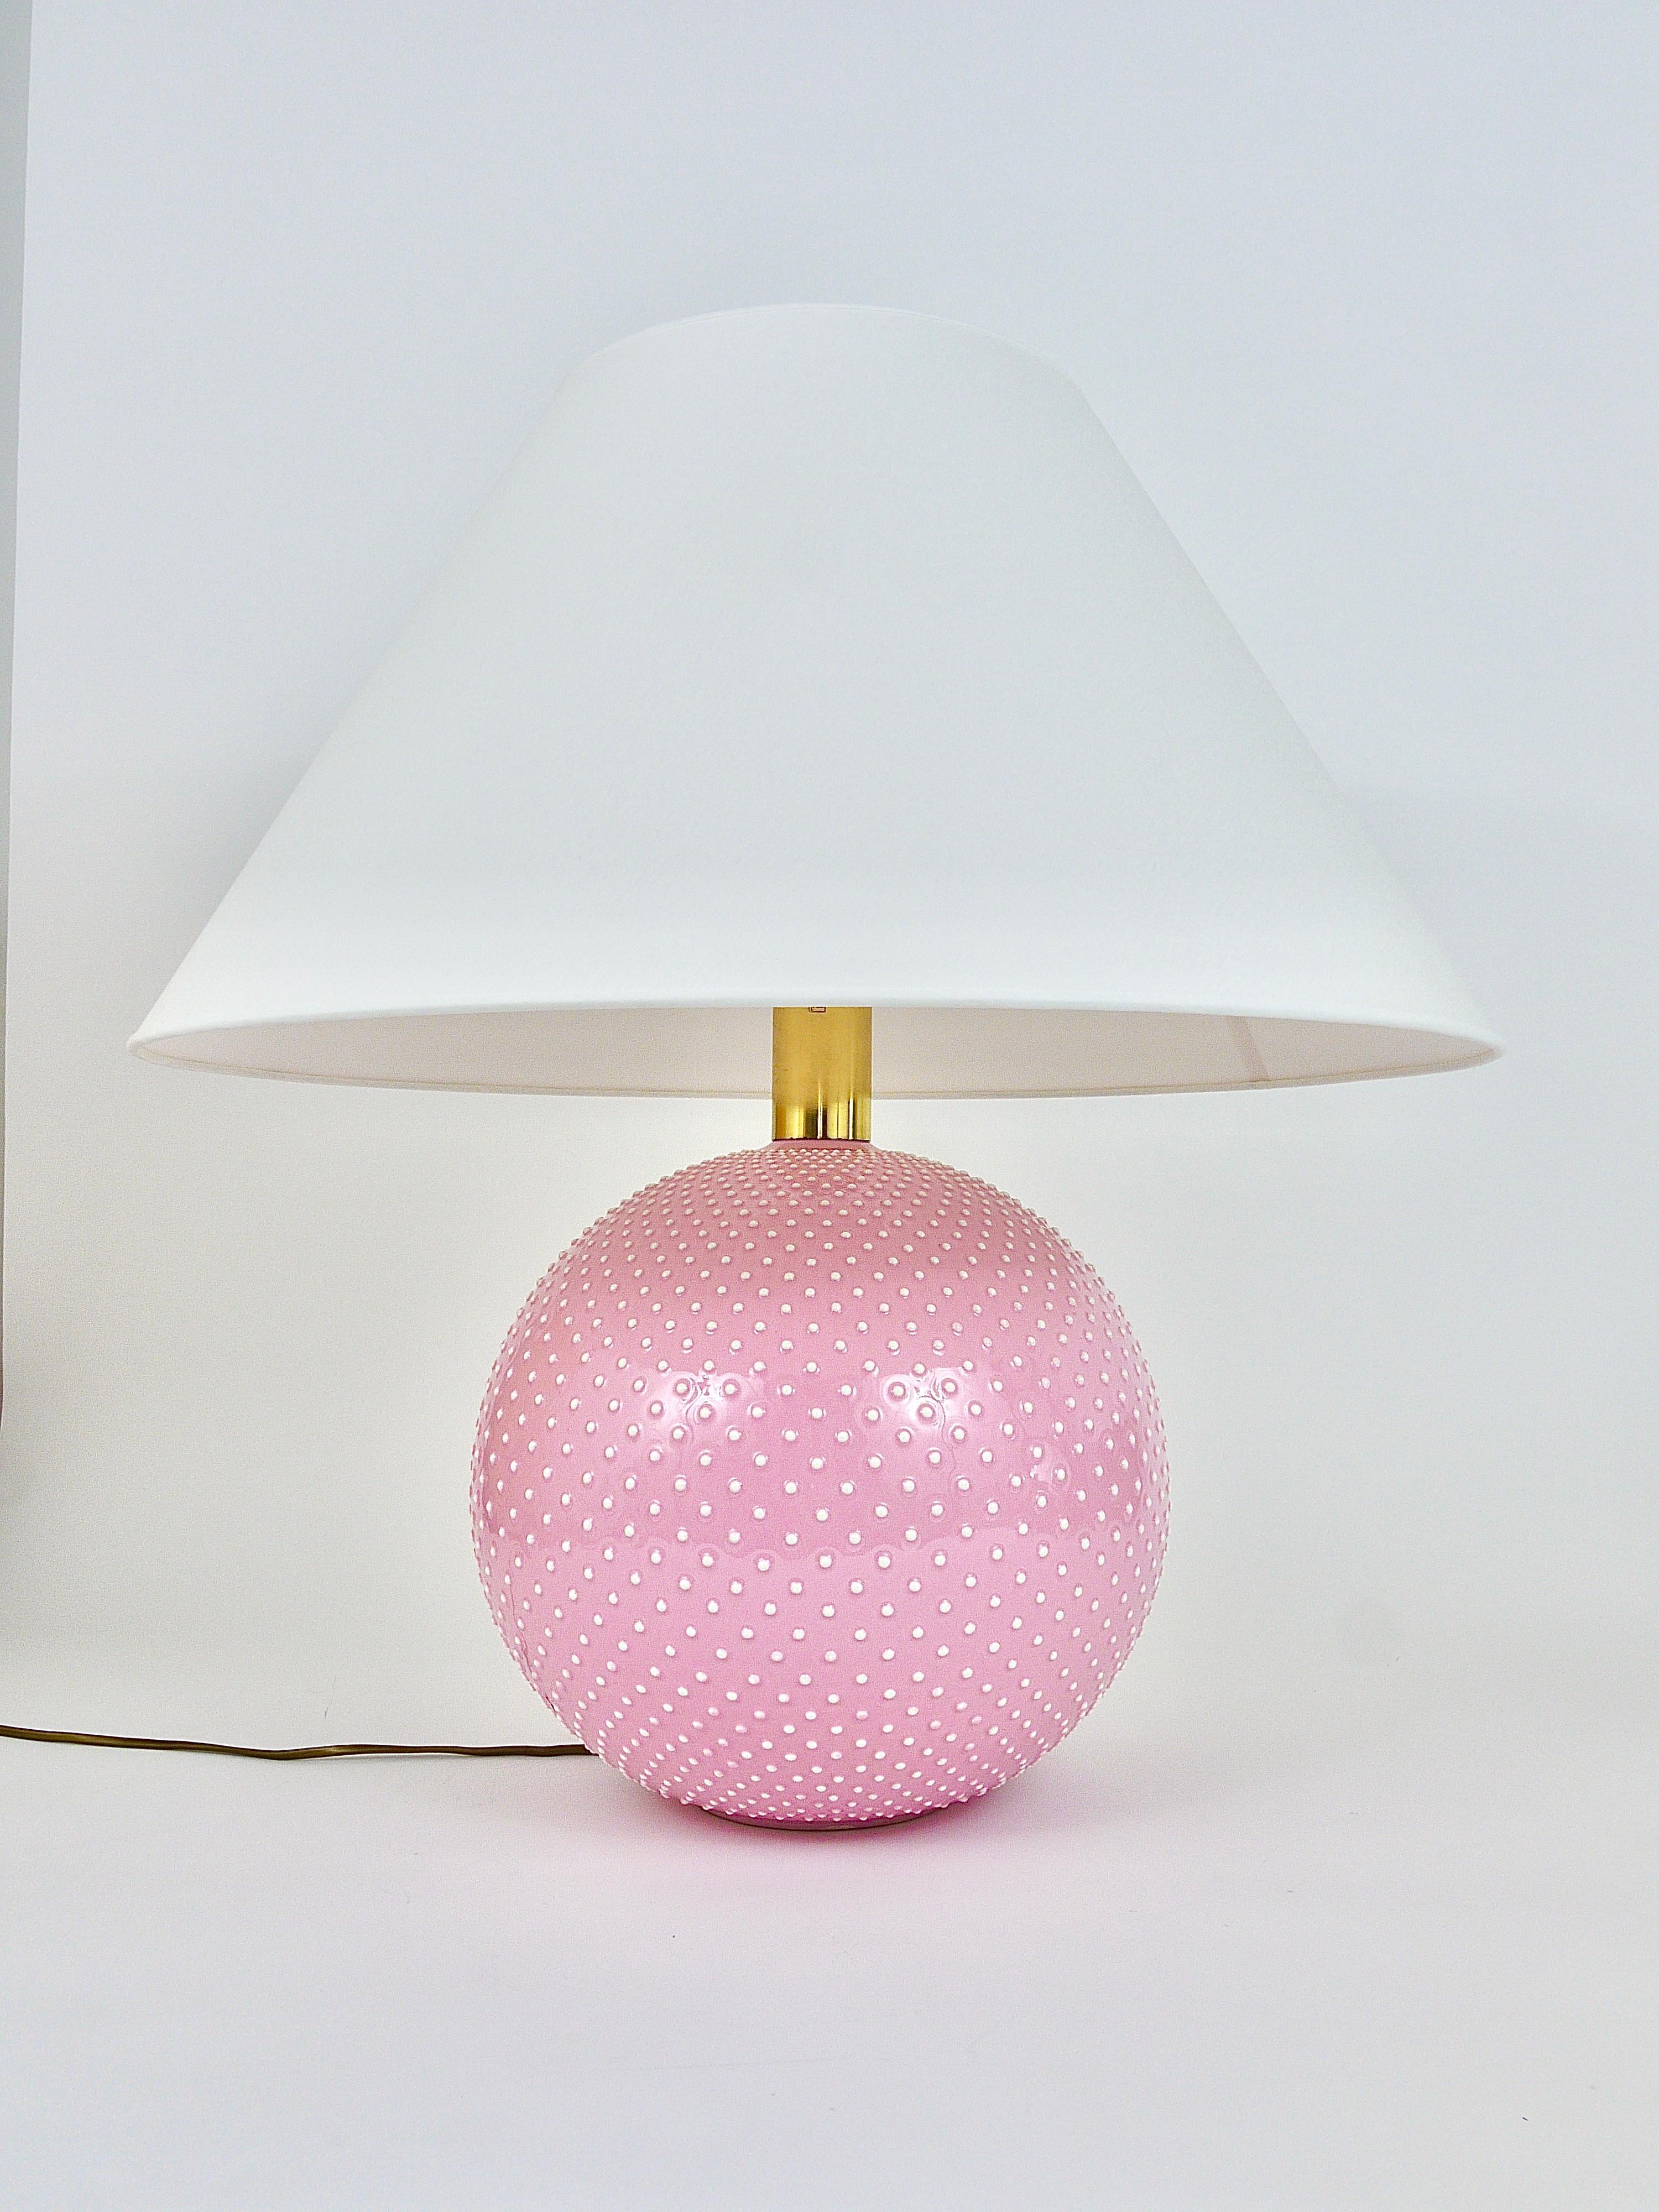 Rosé Pastel Polka Dot Sphere Table Lamp, Ceramic, Brass, Studio Paf Milano, 1970 For Sale 3